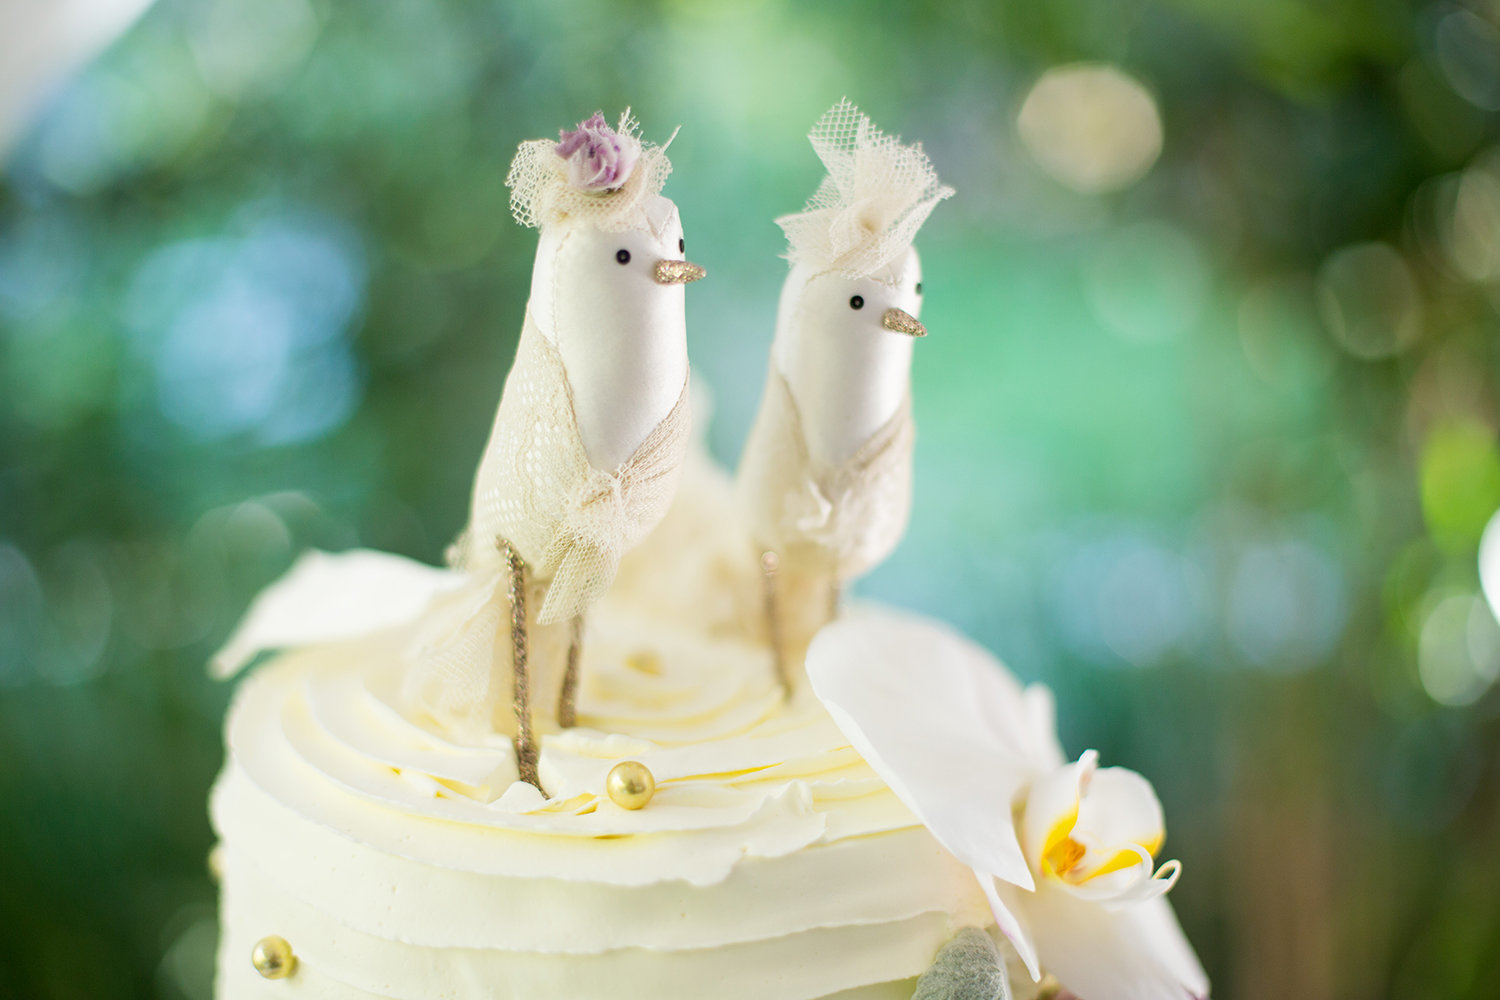 Cute white bird wedding topper for lesbian wedding cake | LGBTQ wedding decor